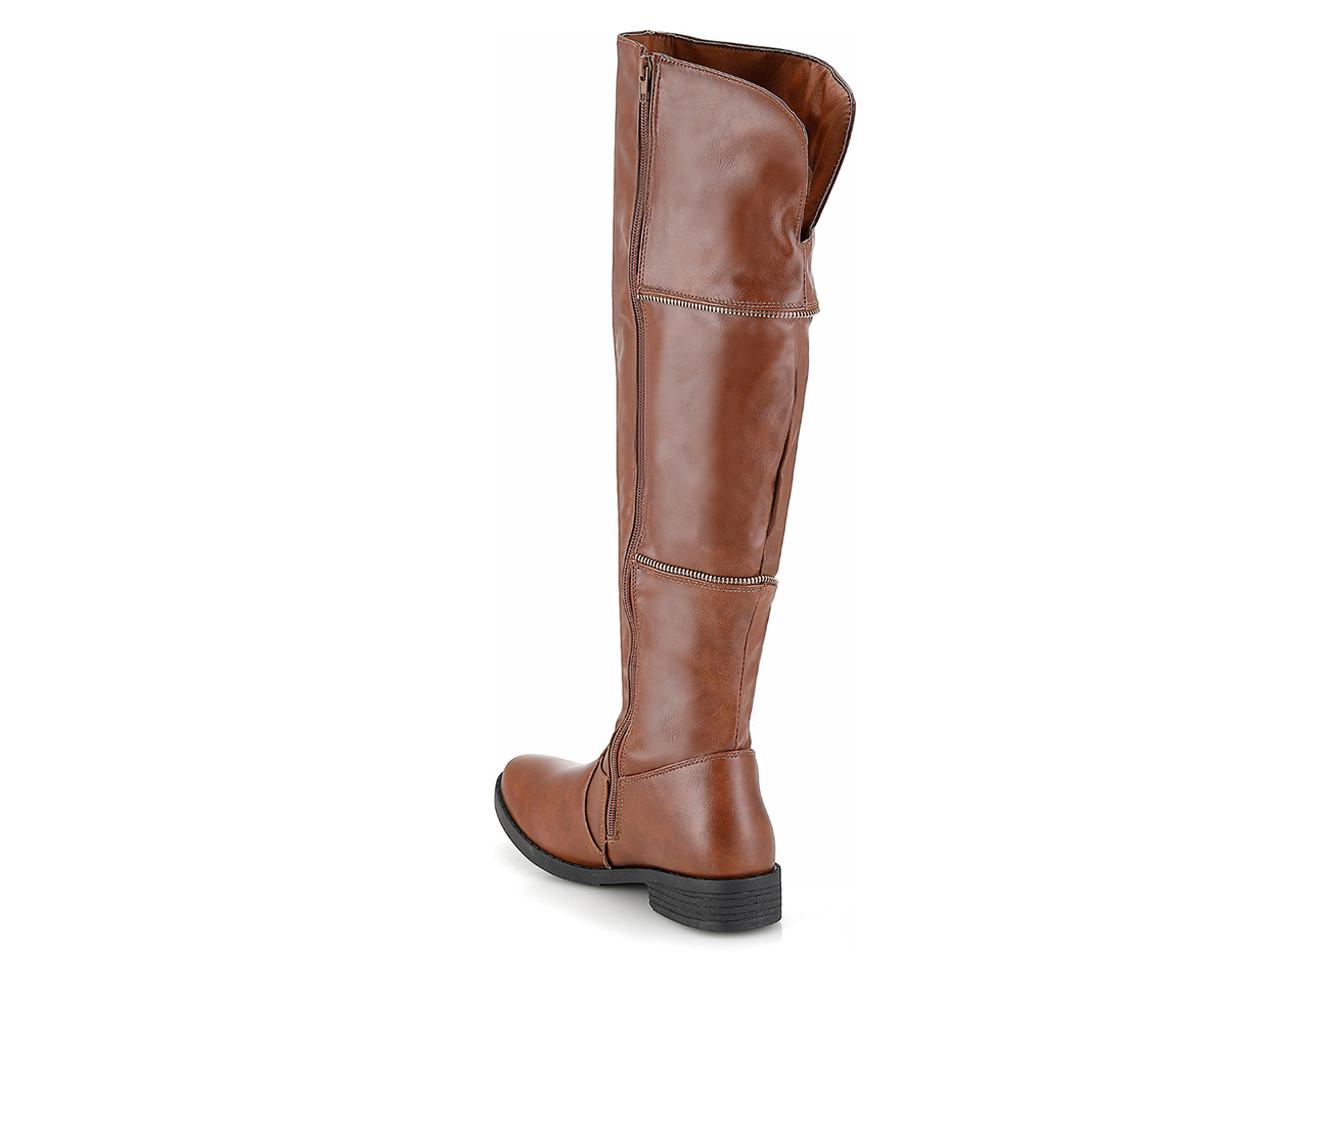 Women's Henry Ferrara Charm-506 Knee High Boots